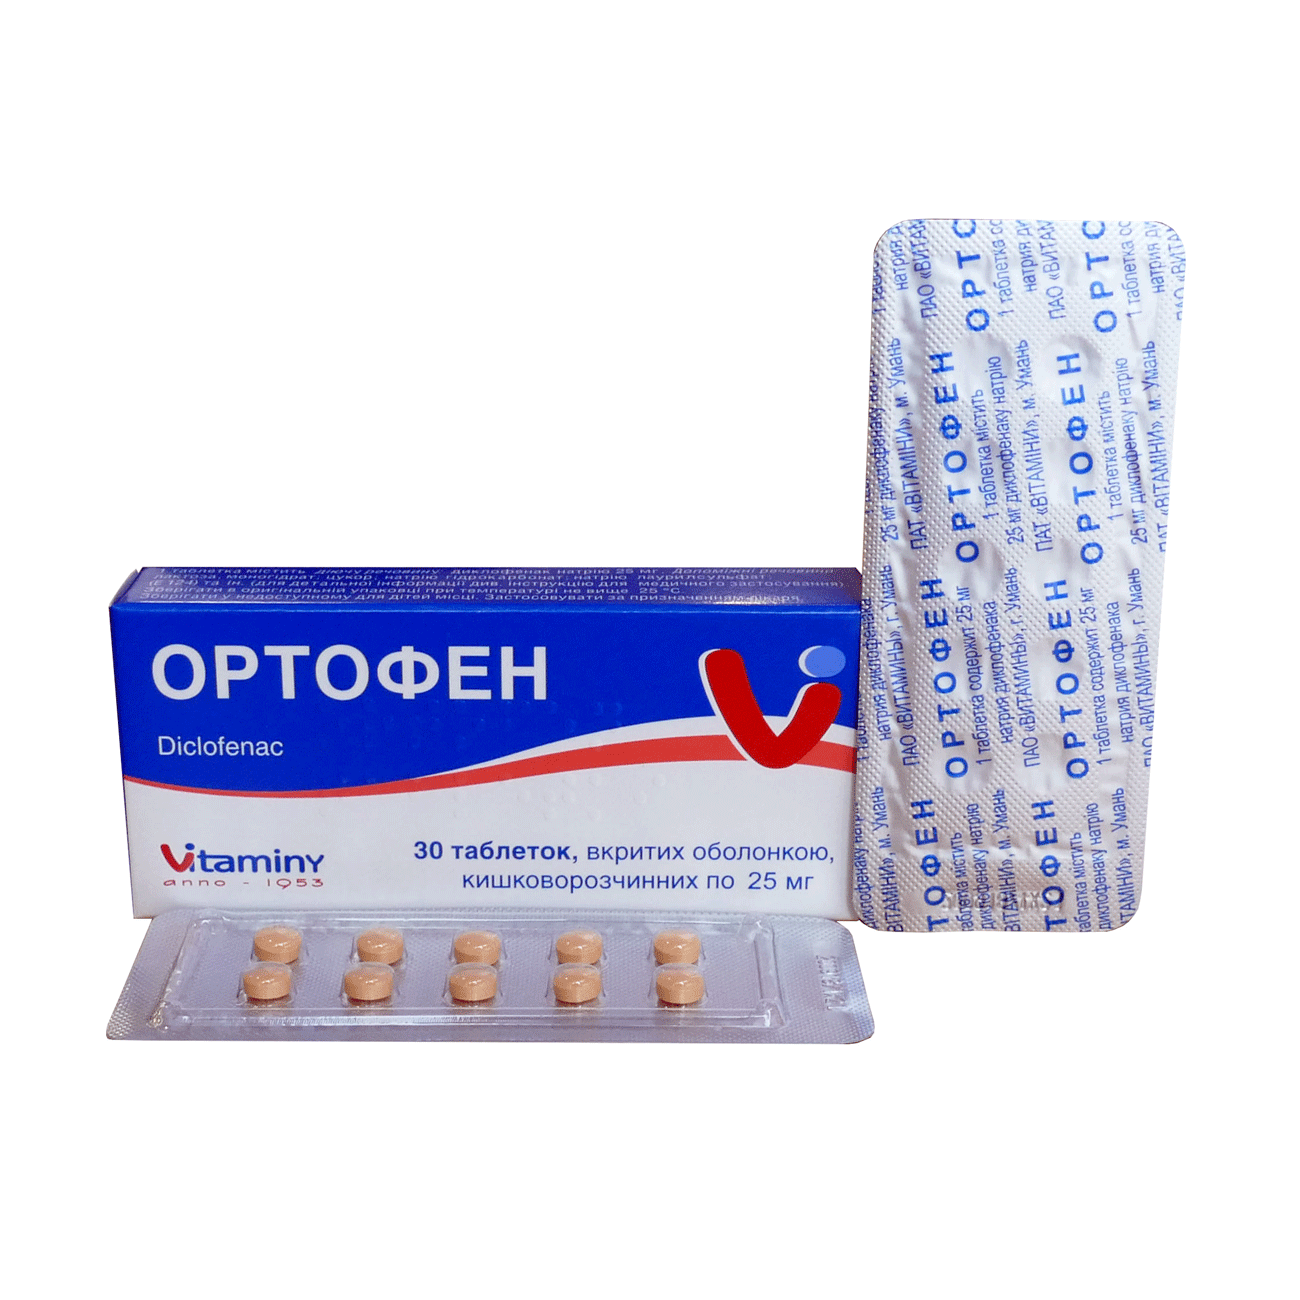 Ортофен - мазь, таблетки, уколы: инструкция по применению и цена препарата